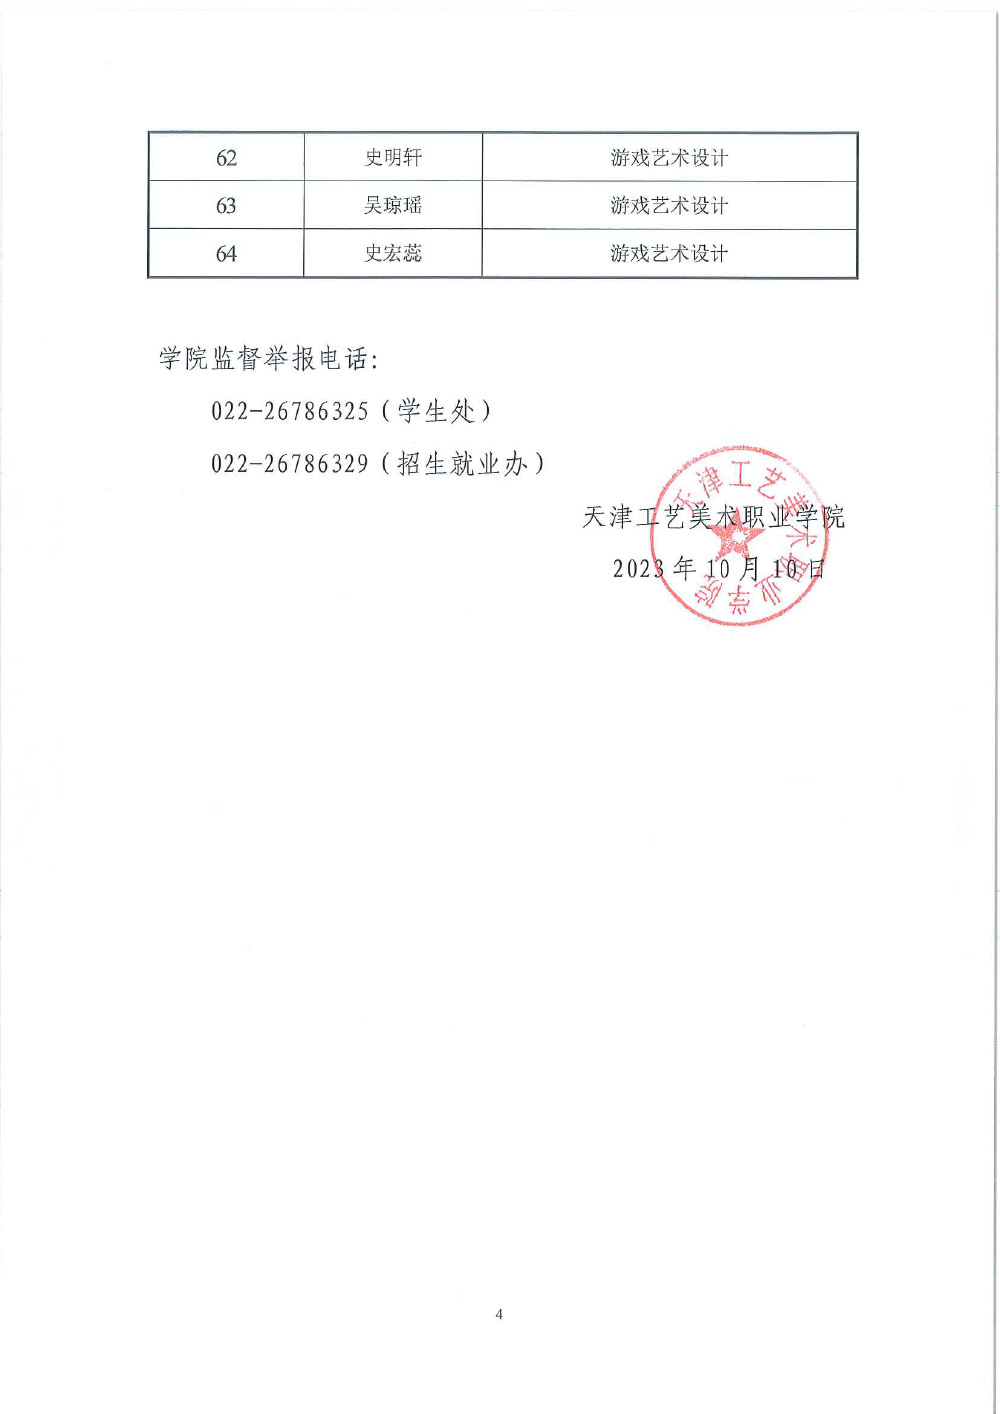 关于天津市求职创业补贴工作的公示(1)-4.jpg